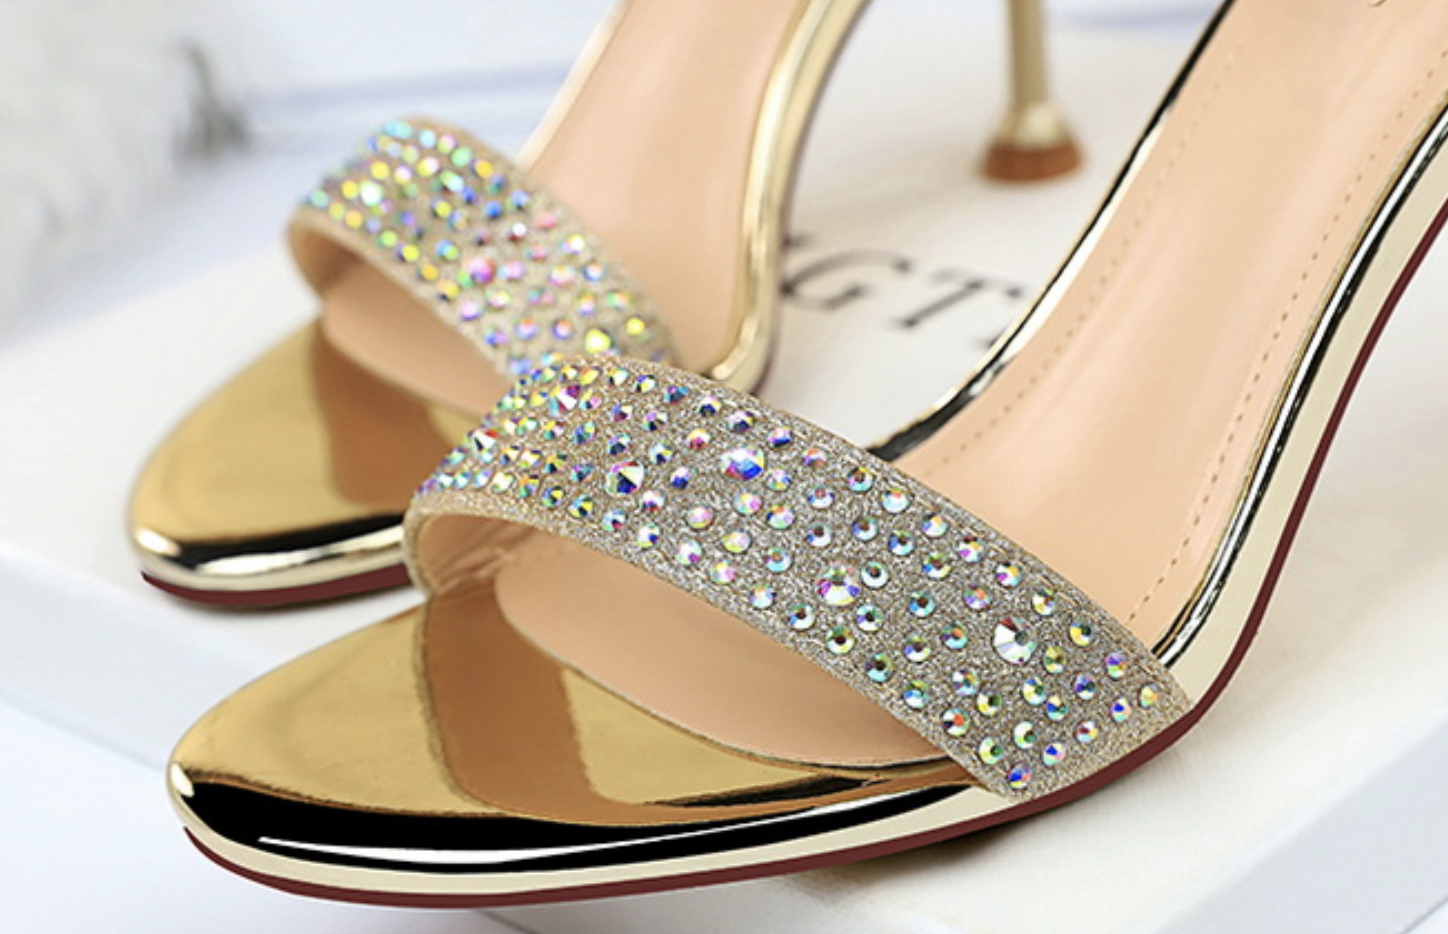 Beige Shoes Female Fancy High Heel Stock Photo 794115901 | Shutterstock